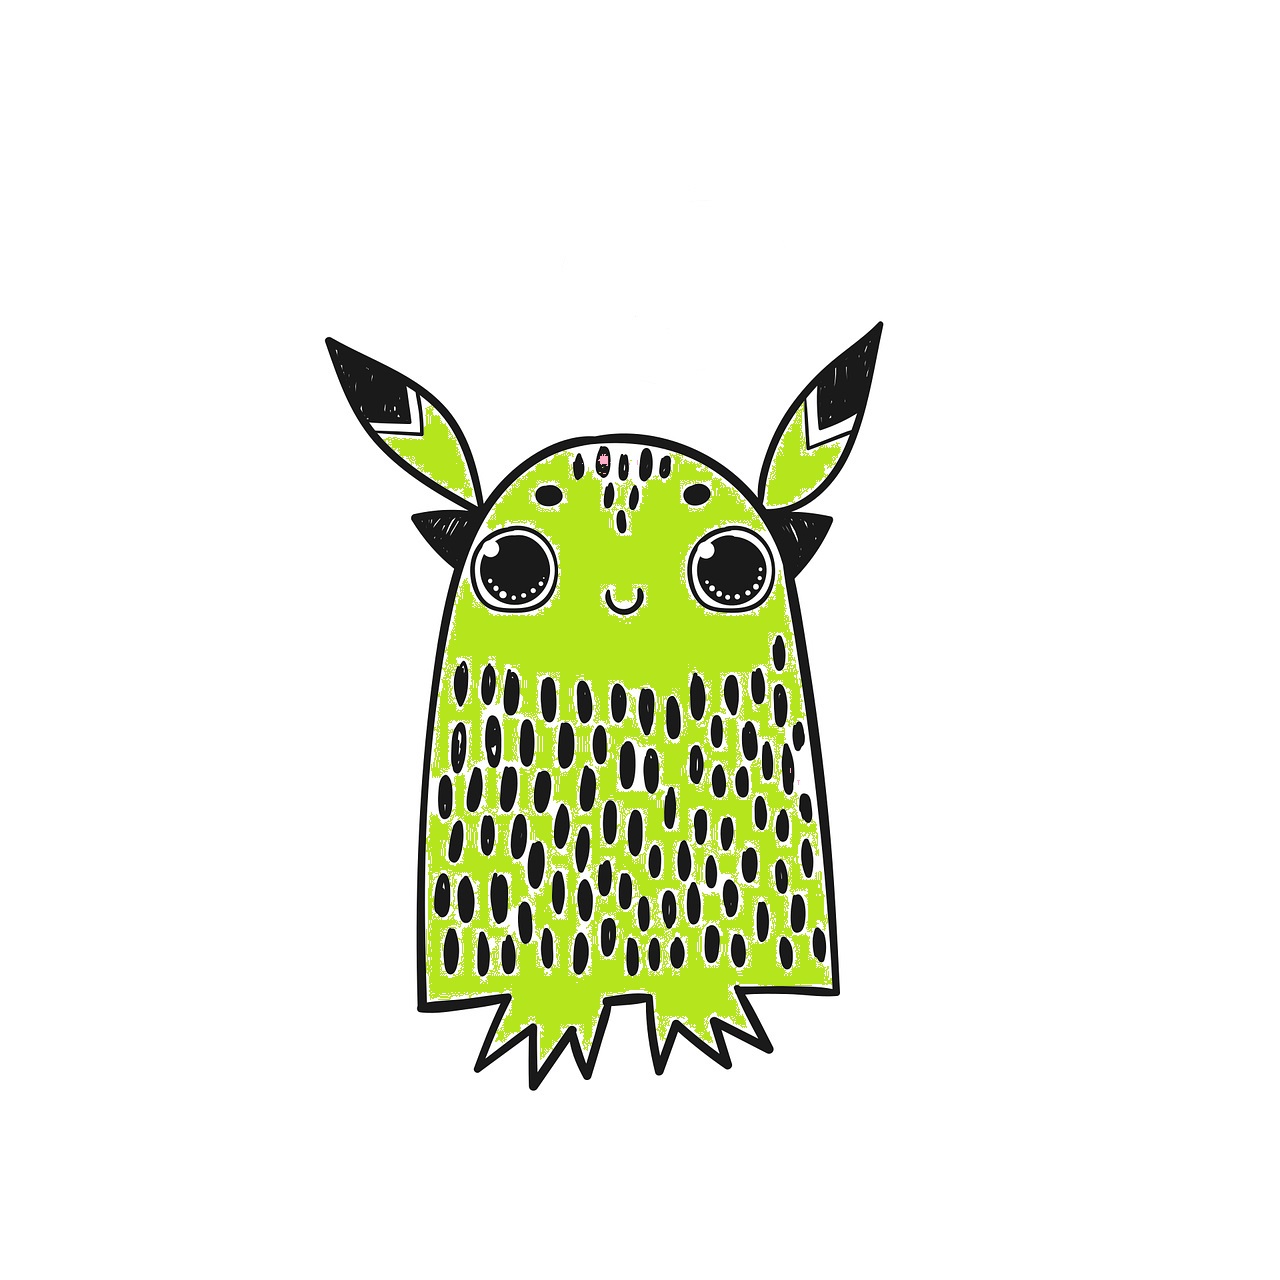 Monstruo verde con forma acampanada, con orejas puntiagudas, sin brazos y pies pequeños. Los ojos son grandes y está sonriendo